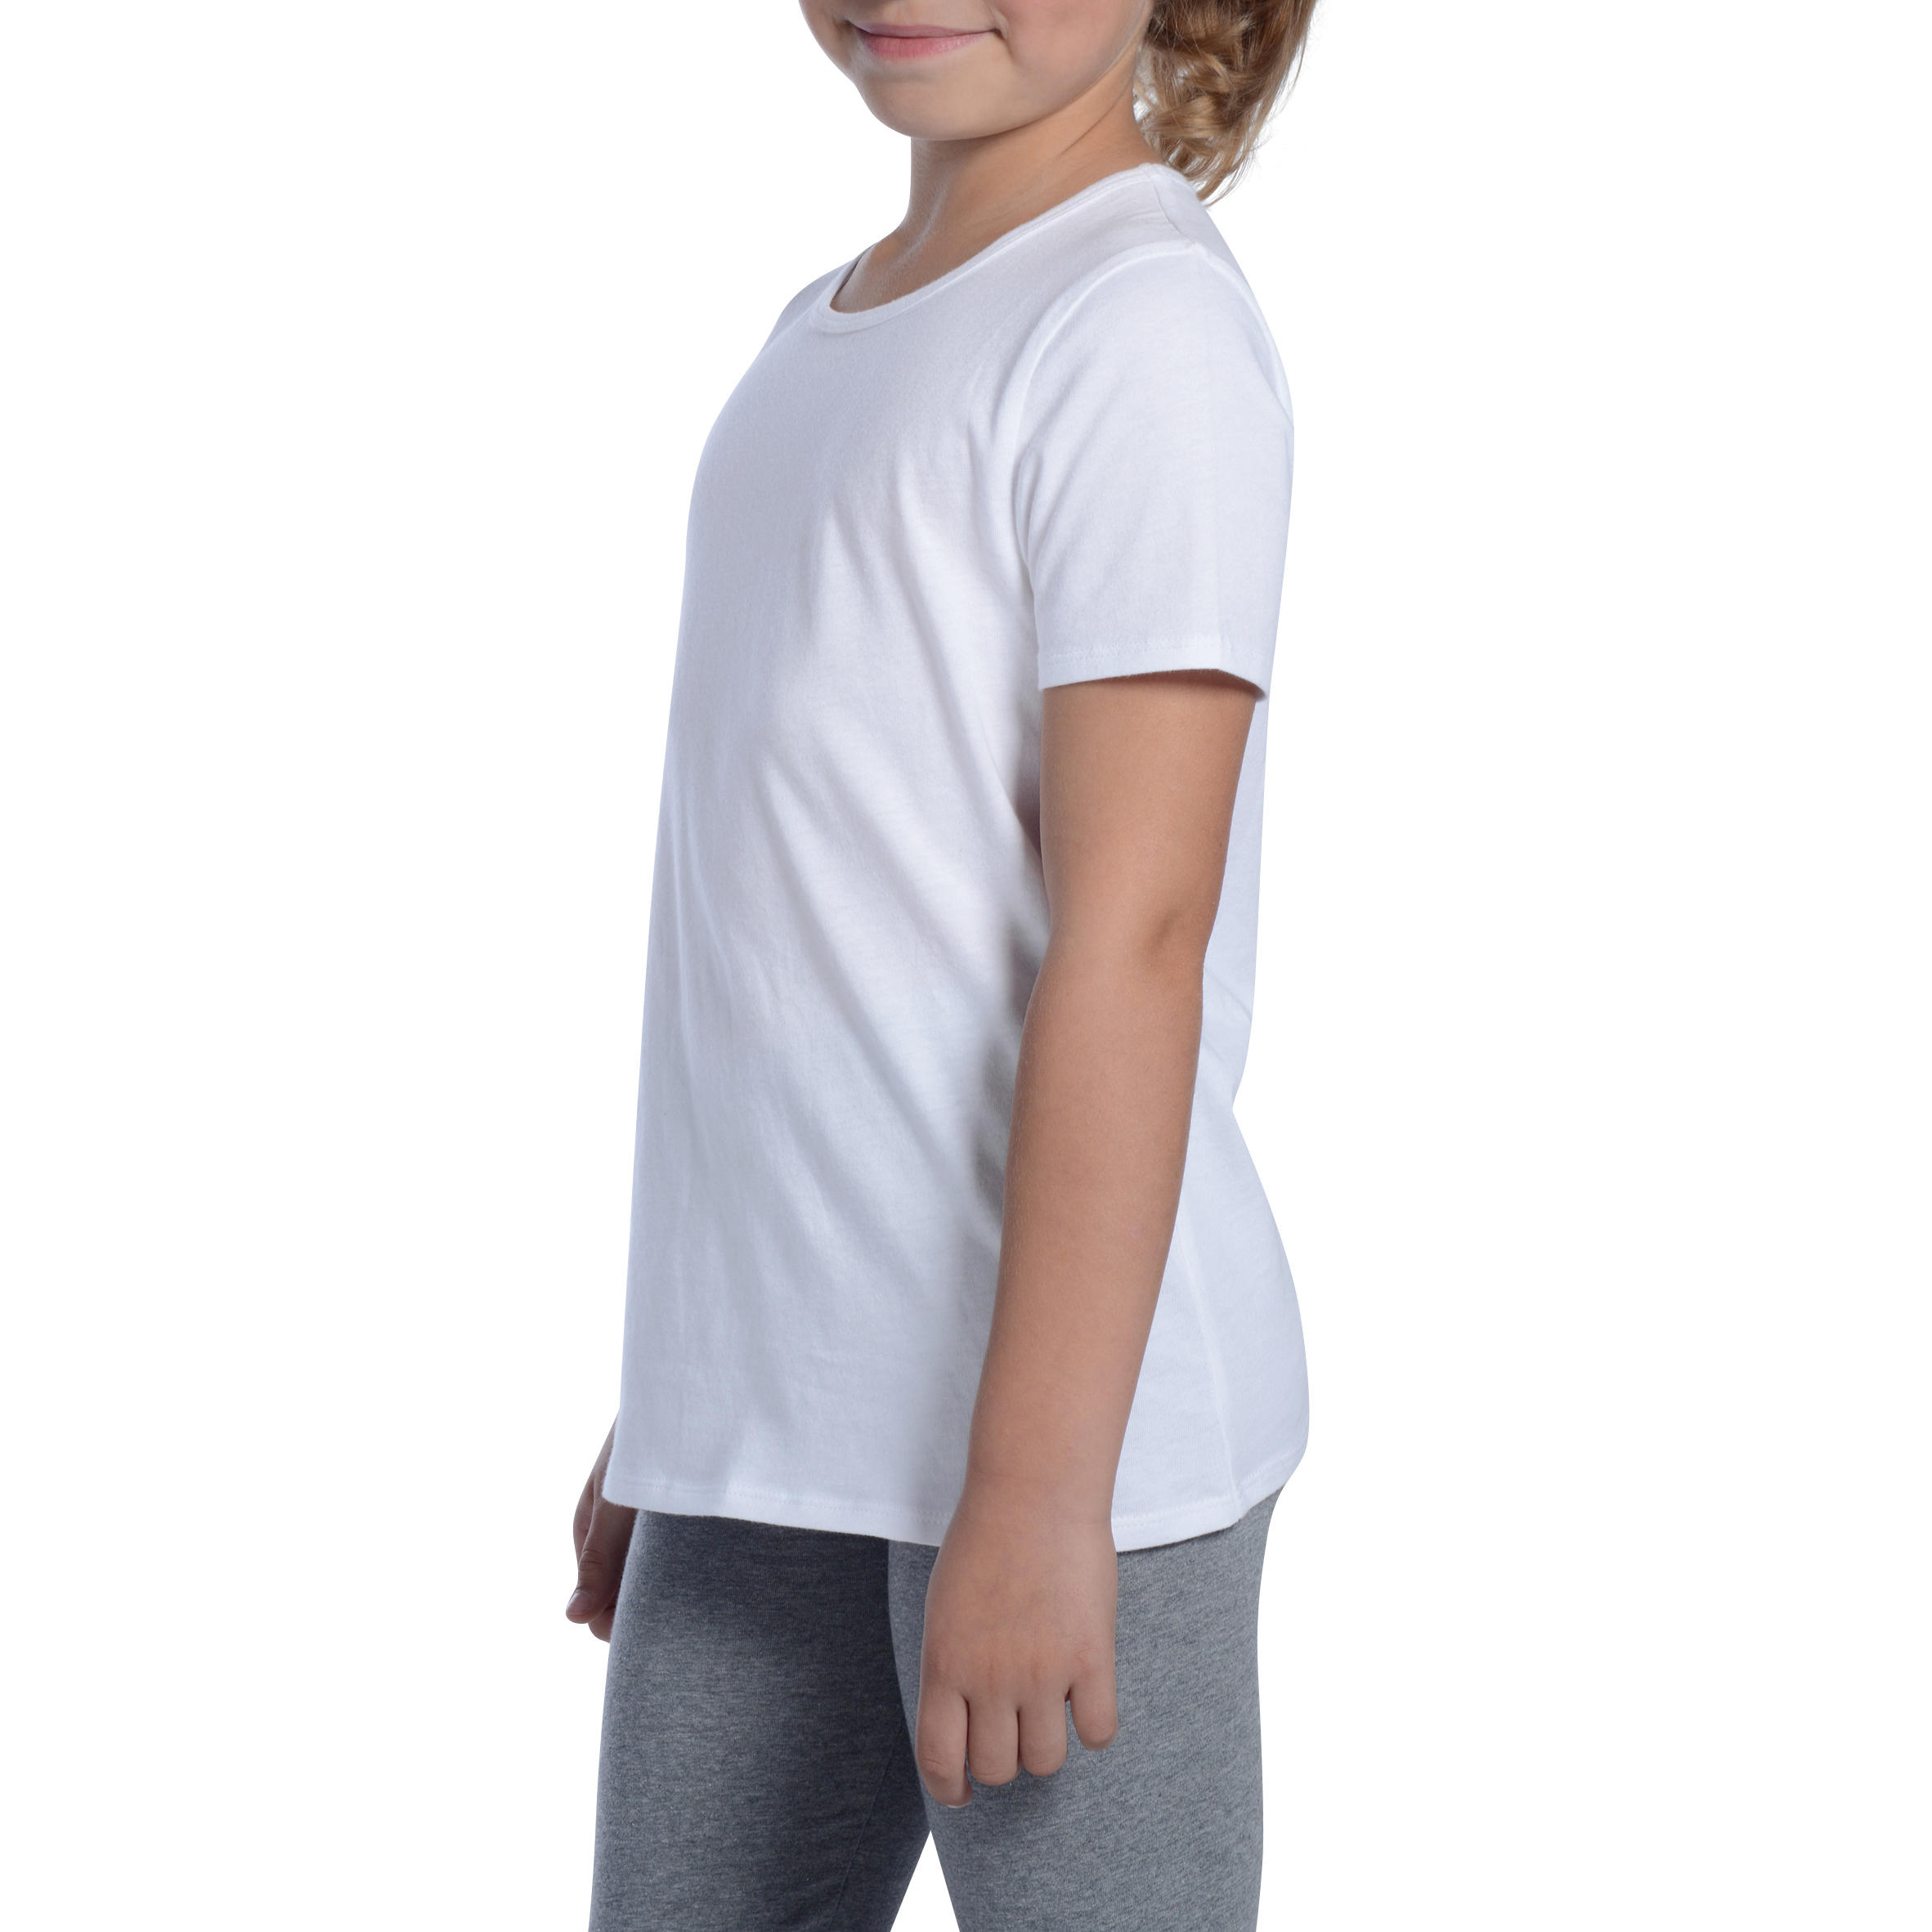 Girls' 100 Short-Sleeved Gym T-Shirt - White 5/9